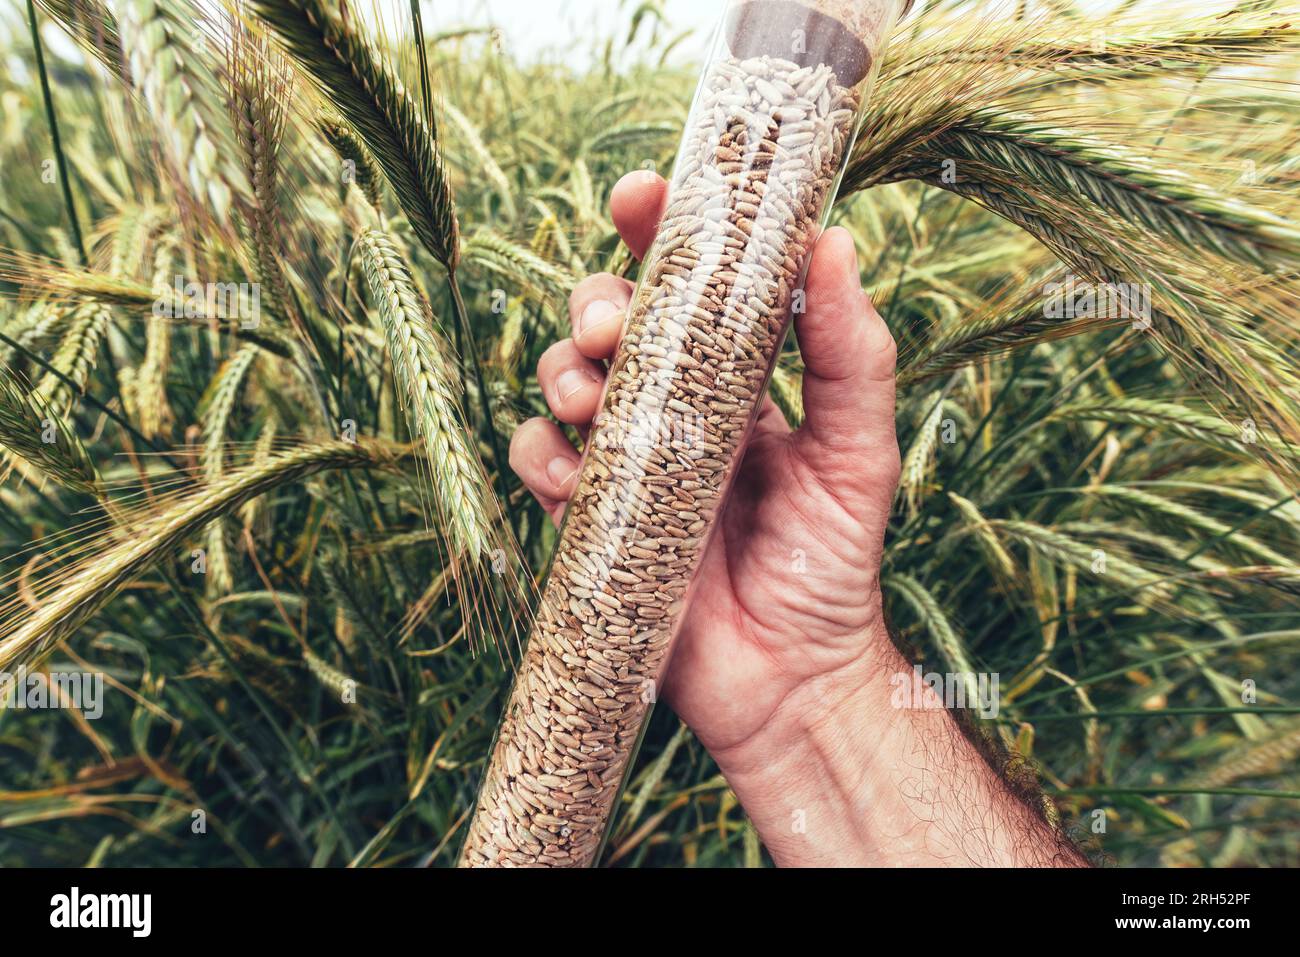 Agronomo per operai agricoli che tiene tubo in plastica con campione di grano di segale, messa a fuoco selettiva Foto Stock